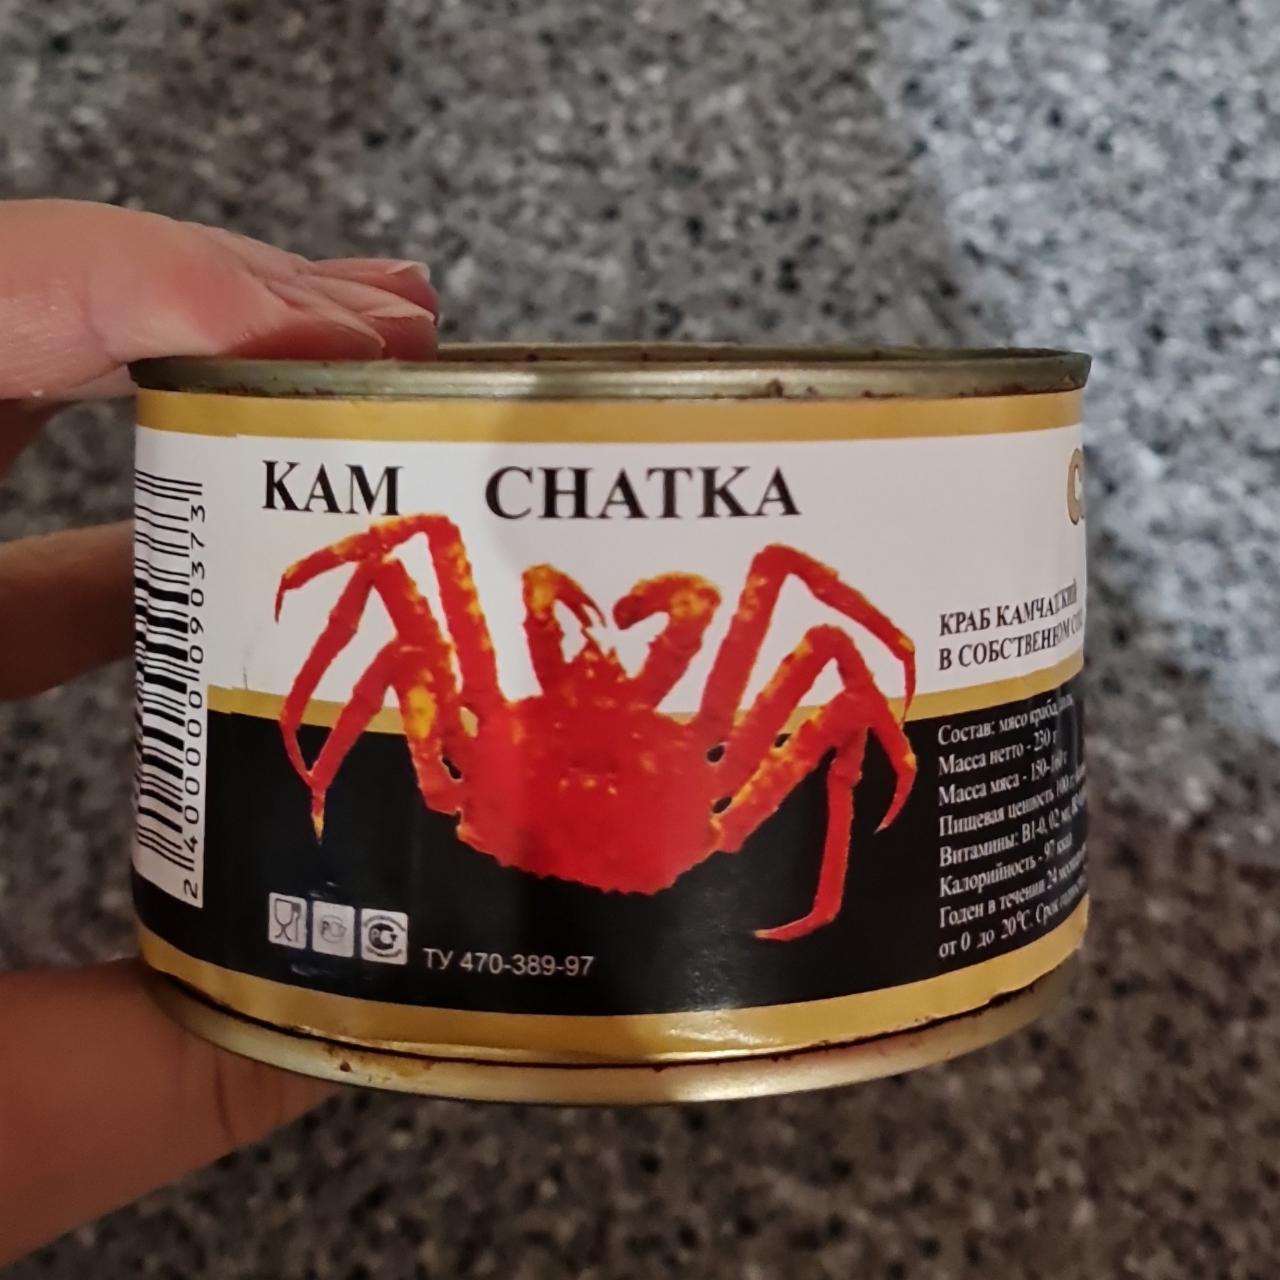 Фото - мясо краба в собственном соку Kamchatka